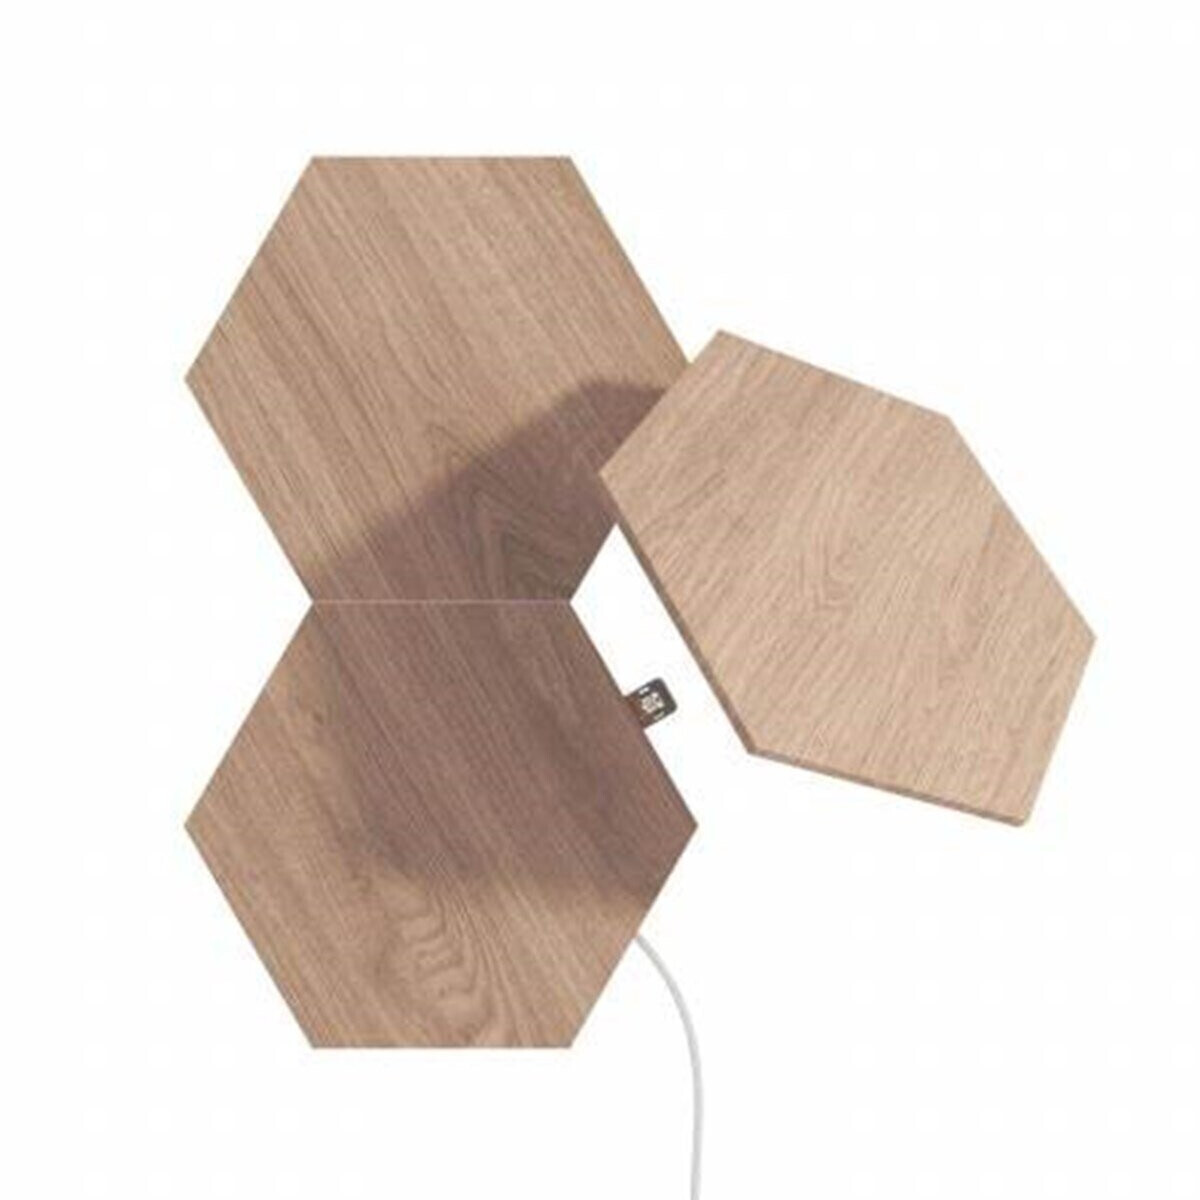 3 Look | 59,99 bei € Erweiterungsset ab (NL52-E-0001HB-3PK) Nanoleaf Licht-Panele Hexagons Wood Preisvergleich Elements